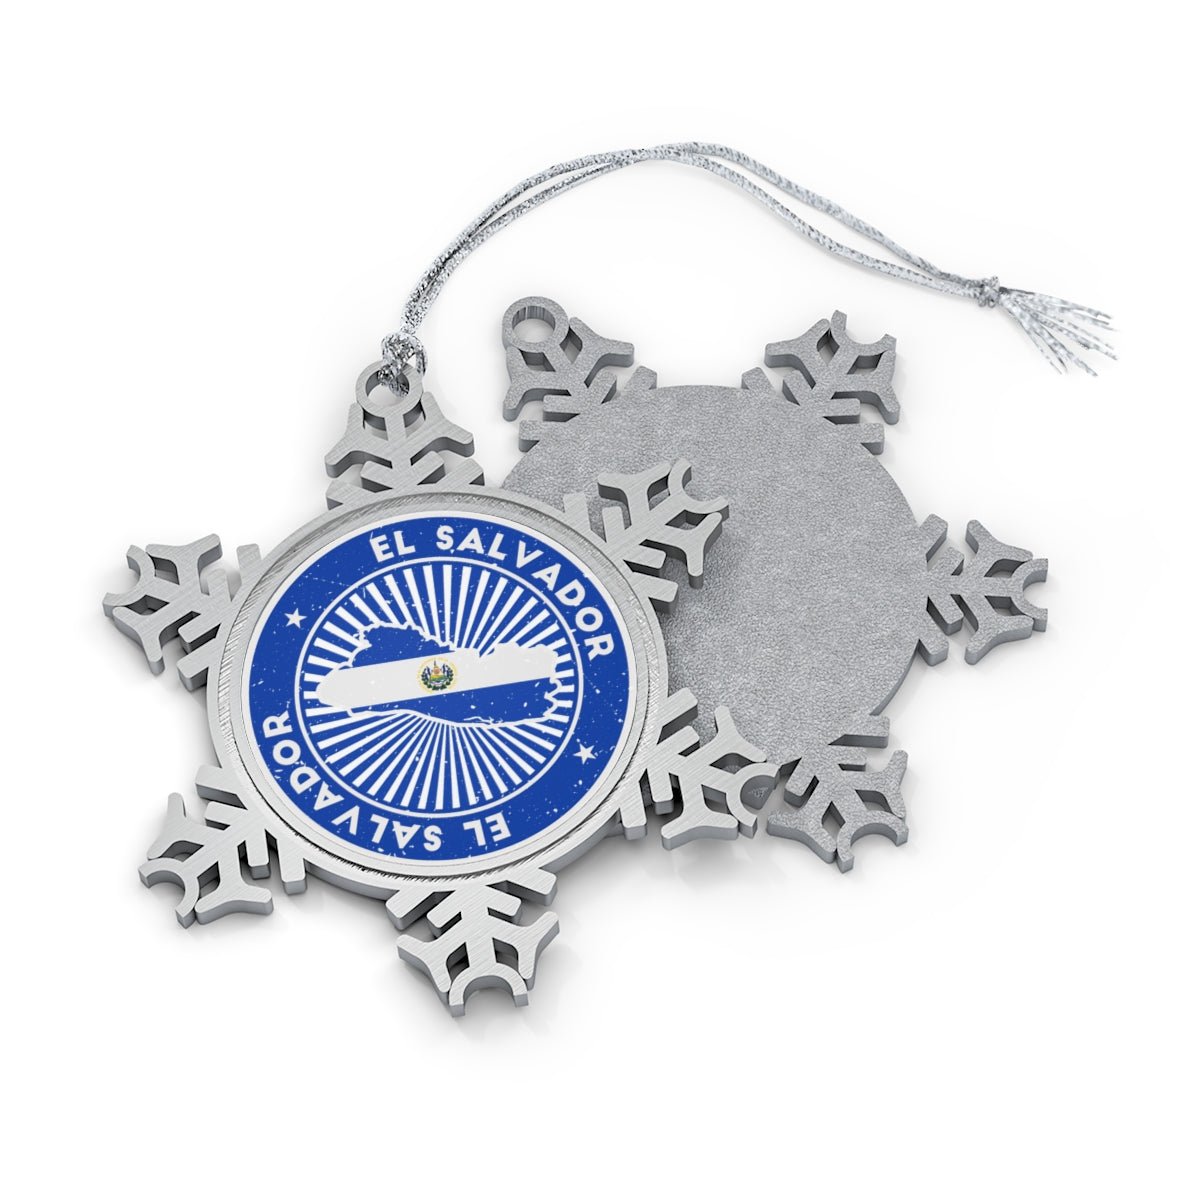 El Salvador Snowflake Ornament - Ezra's Clothing